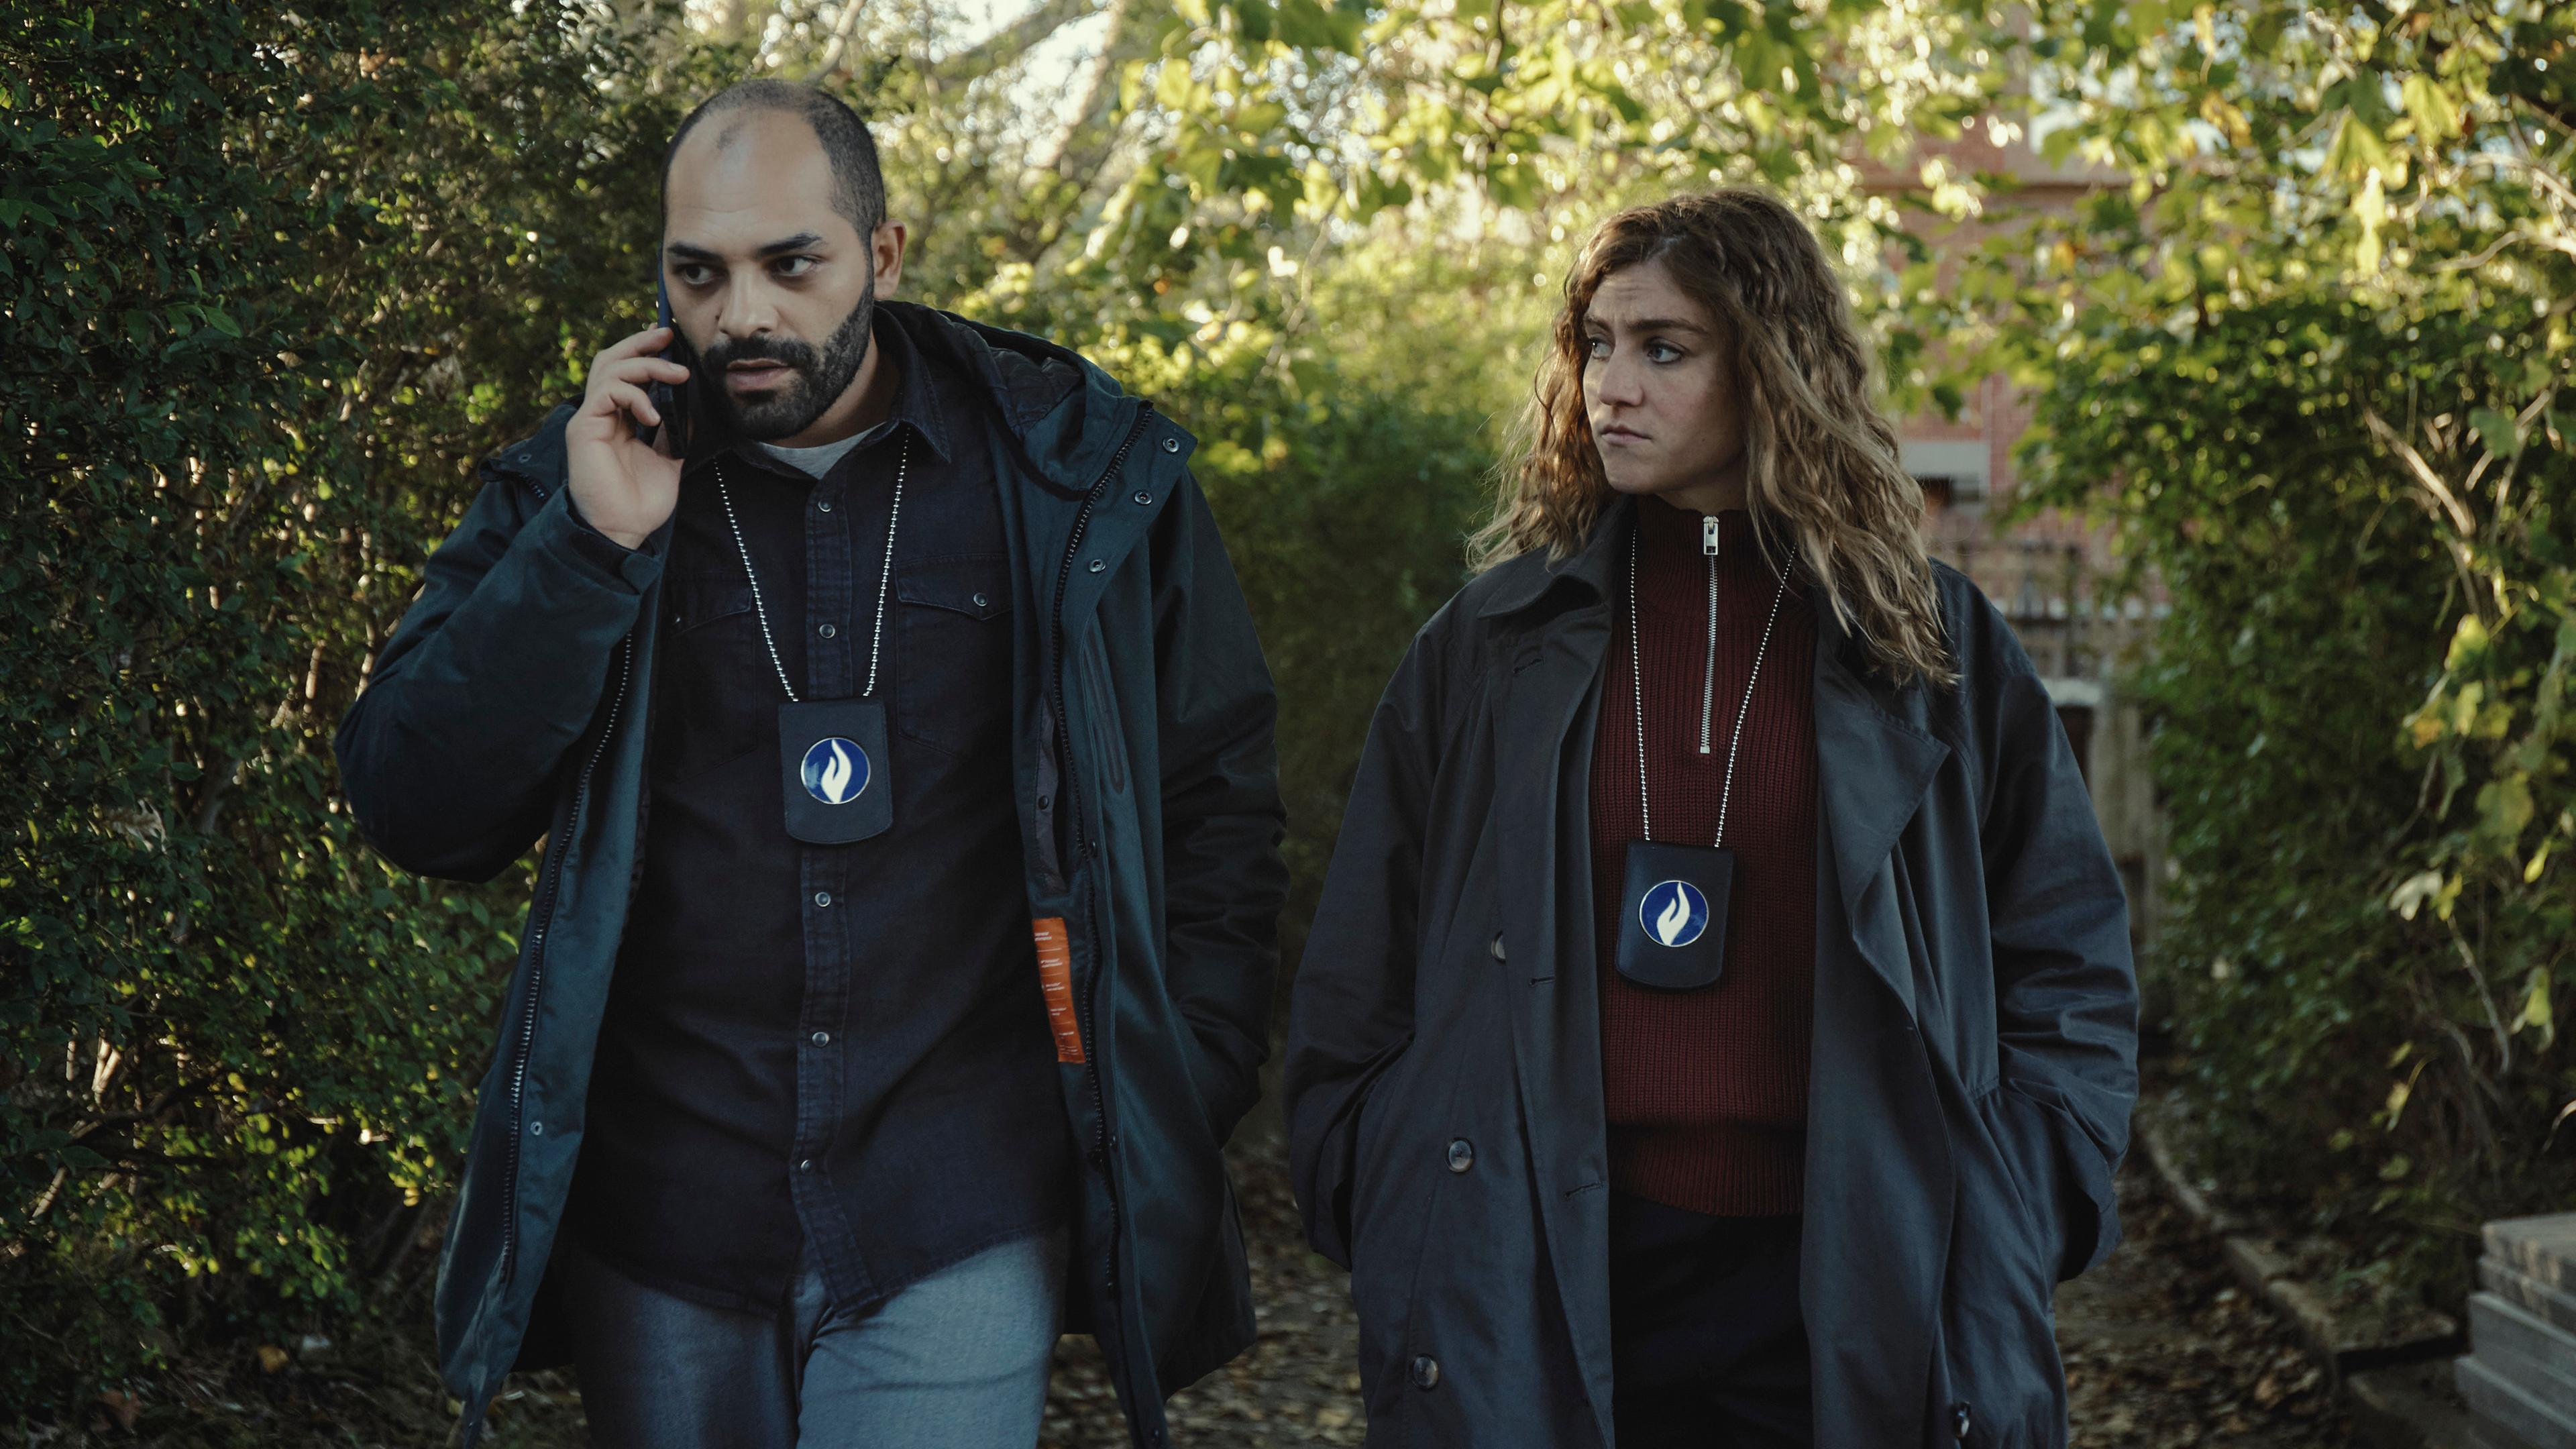 "Juliet - Die Tote im Kanal": Jamal (Nabil Mallat) und Juliet (Charlotte De Bruyne) gehen in einem Garten nebeneinander. Er telefoniert. Sie schaut in Jamals Richtung.